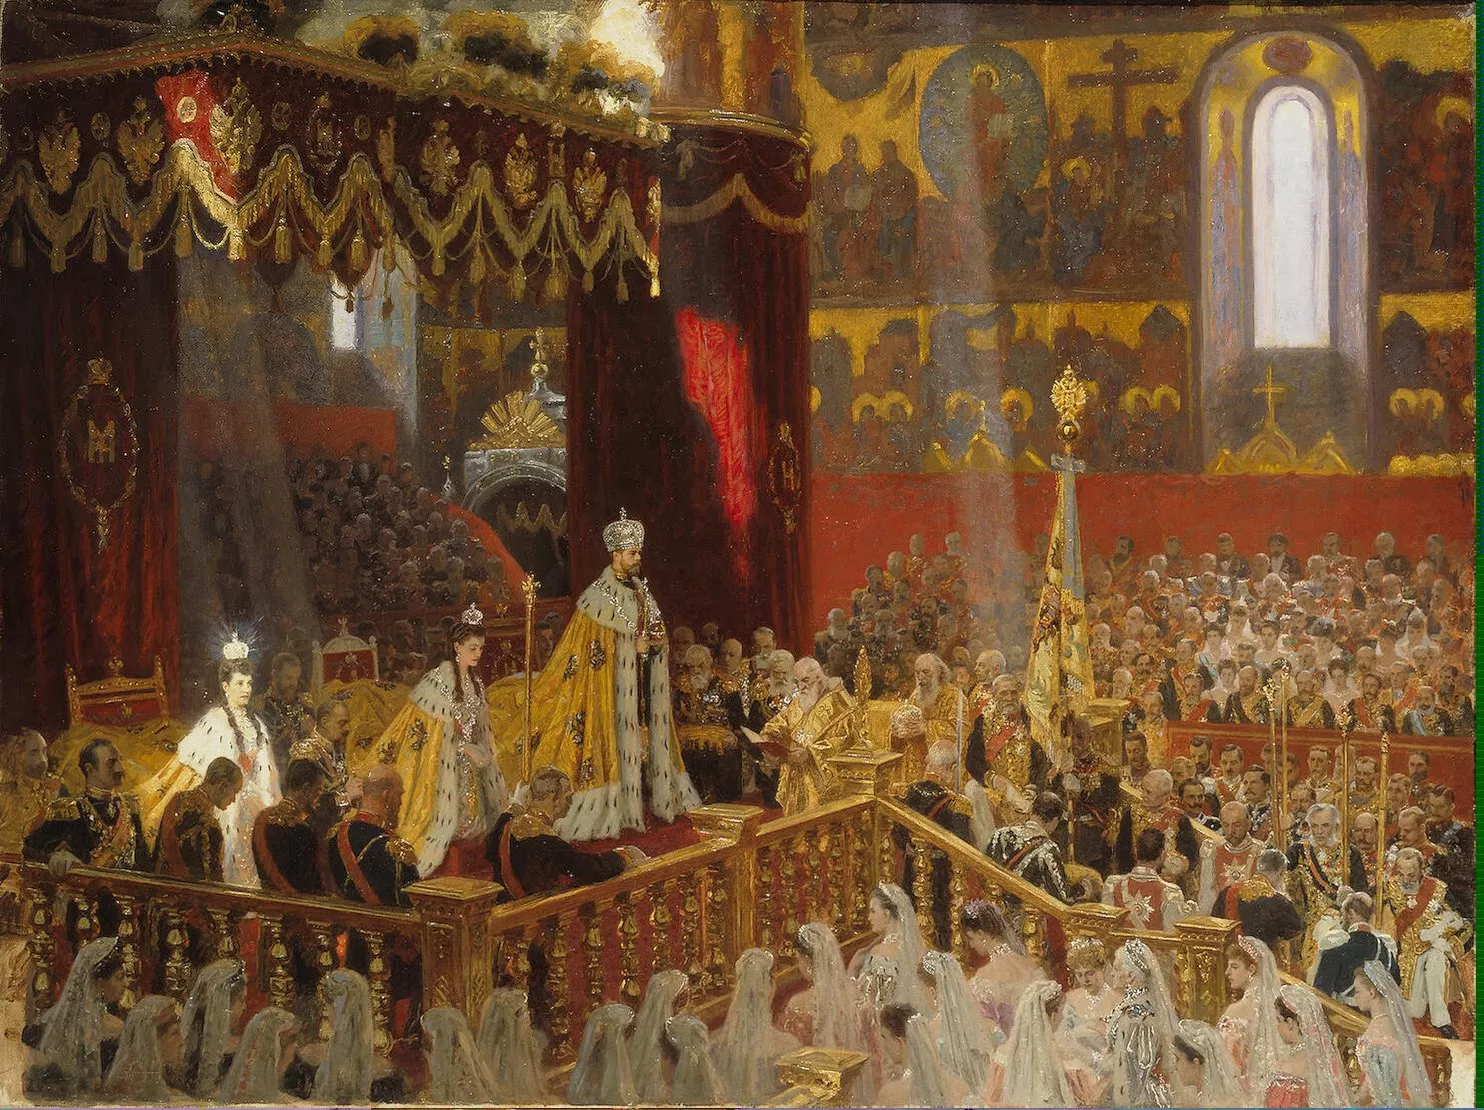 Coronació del tsar Nicolau II, l'últim tsar de Rússia